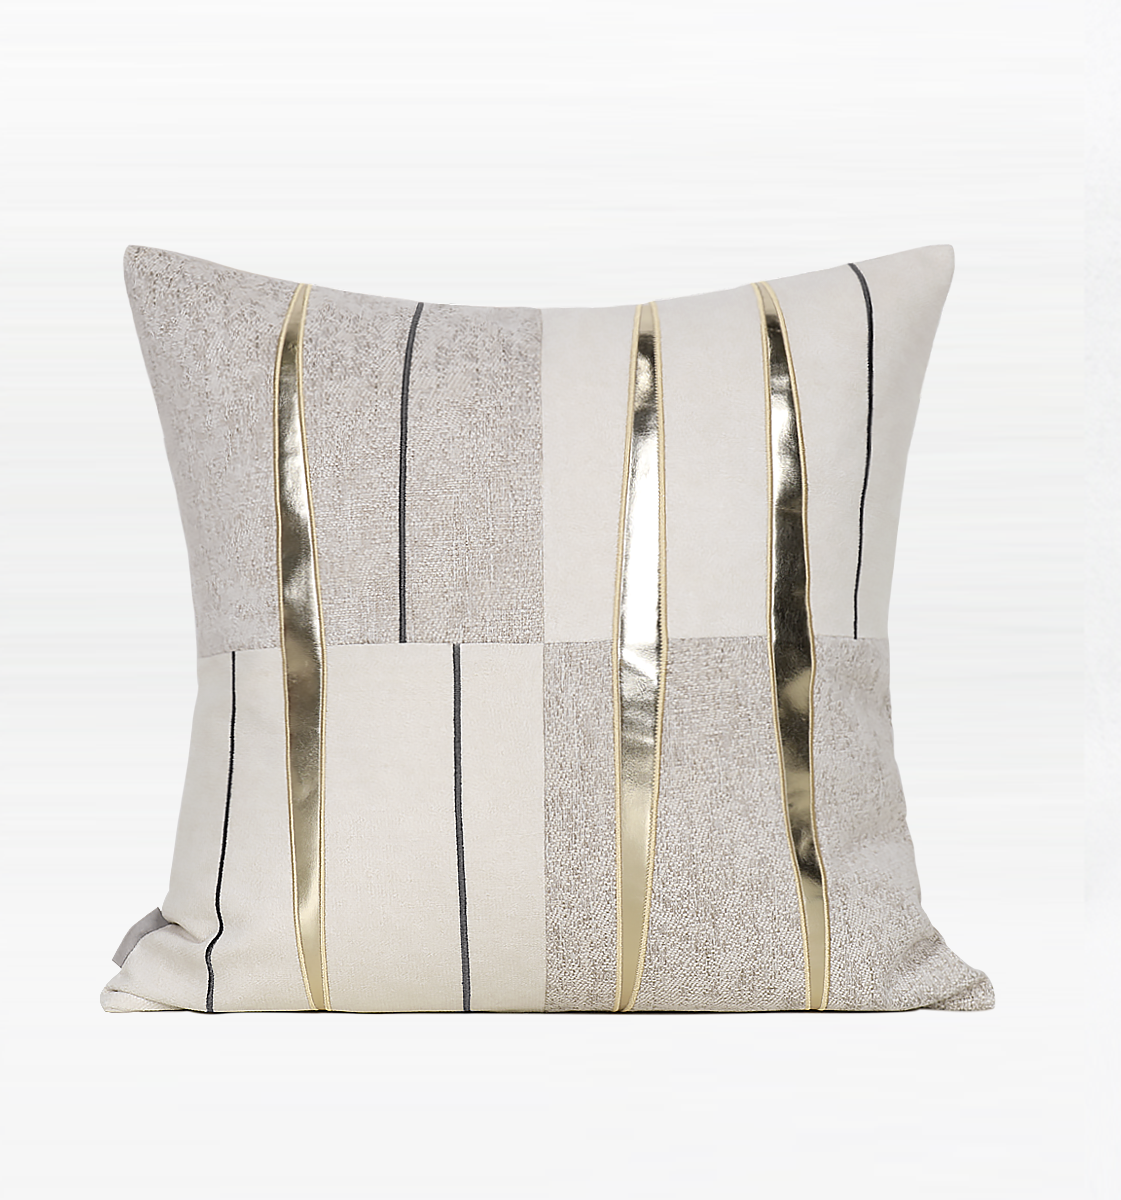 Modern Sofa Pillow, Modern Throw Pillows, Square Pillow with Off-white Metallic Leather Trim